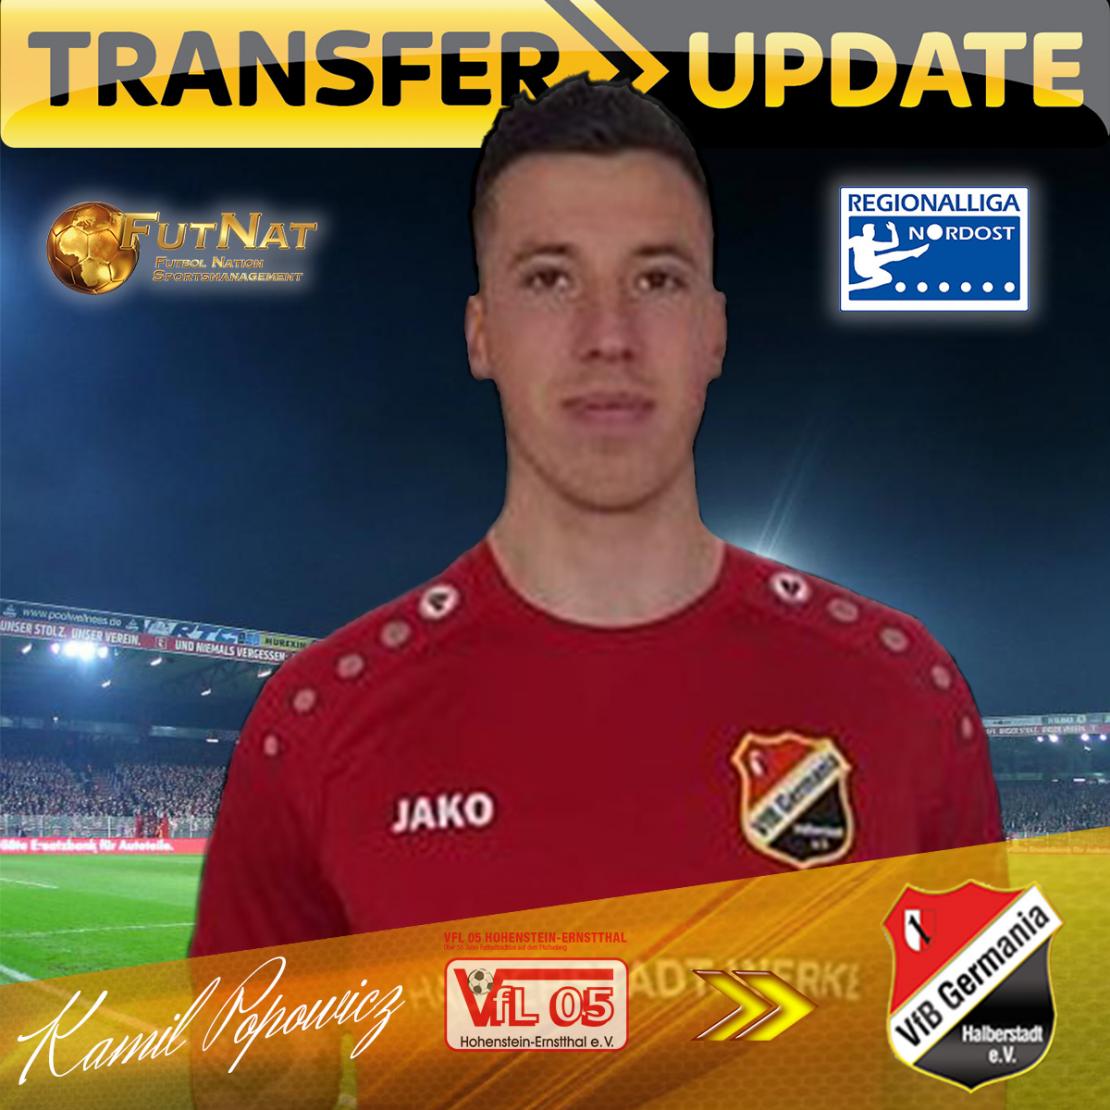 Kamil Popowicz swaps into Regionalliga Nordost